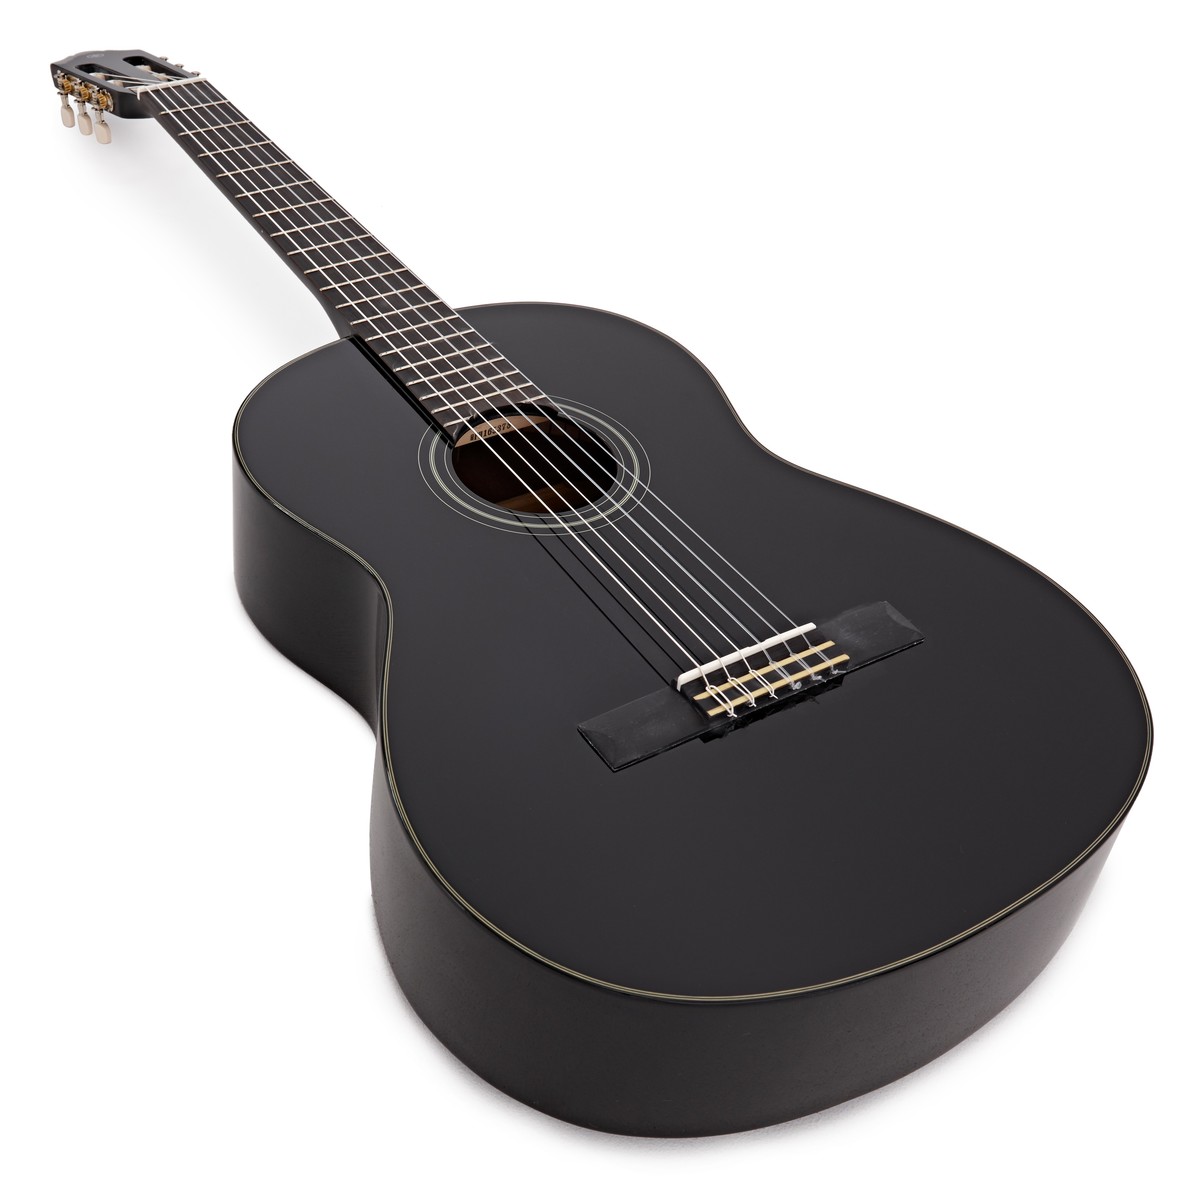 Đàn Guitar Classic, Classical &amp; Nylon - Yamaha C40II (C40 version 2) - Black, model phù hợp cho người mới bắt đầu - Hàng chính hãng